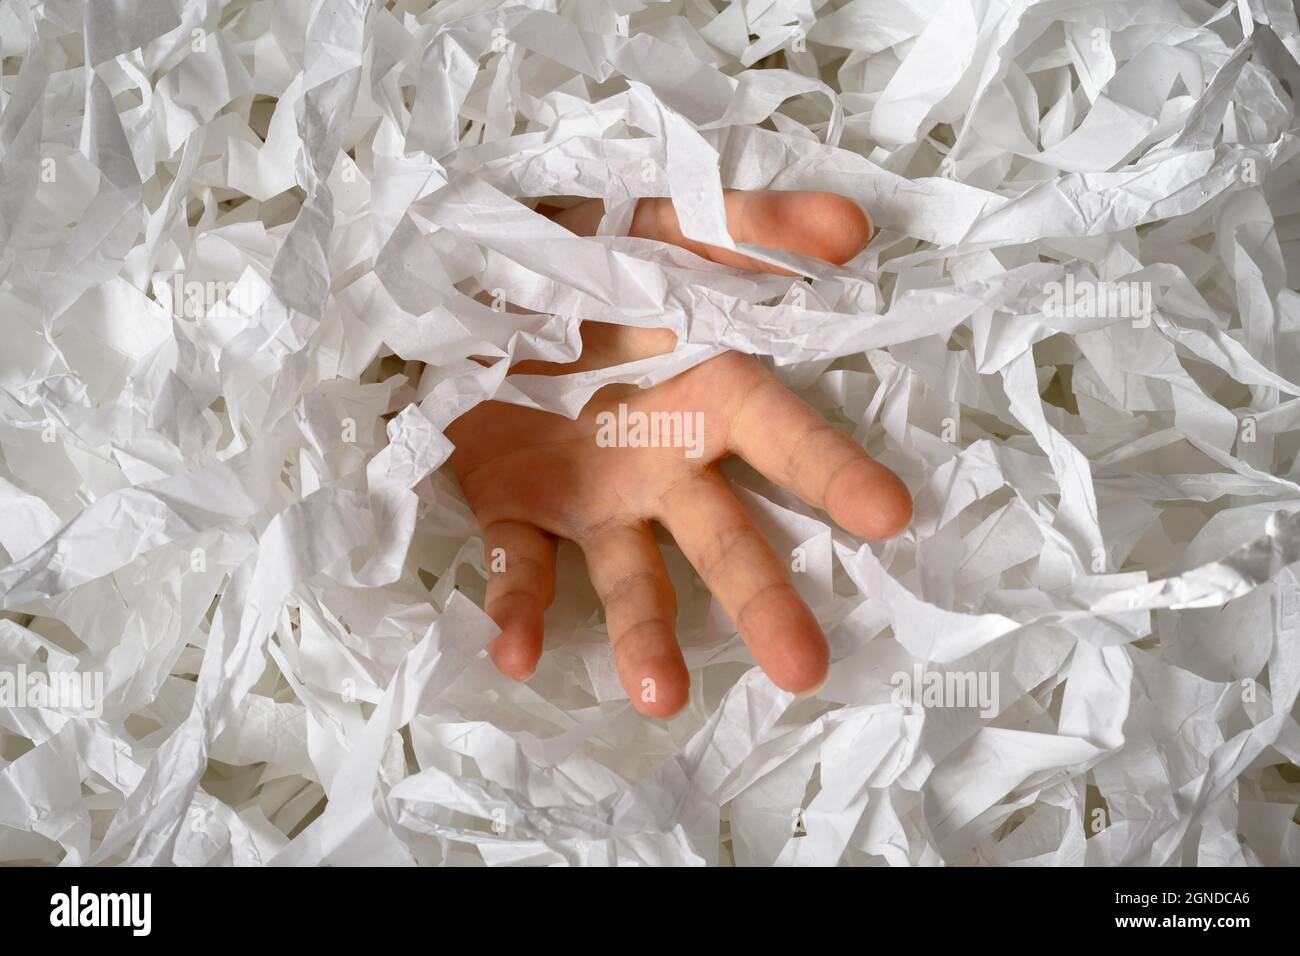 Die Hand greift aus dem Haufen zerfetzten Papiers, der Mann versinkt in einem Haufen weißer Konfetti. Jemand, der in Papiermüll, Müll oder Box-Füllstoff ertrinkt. Konzept Stockfoto